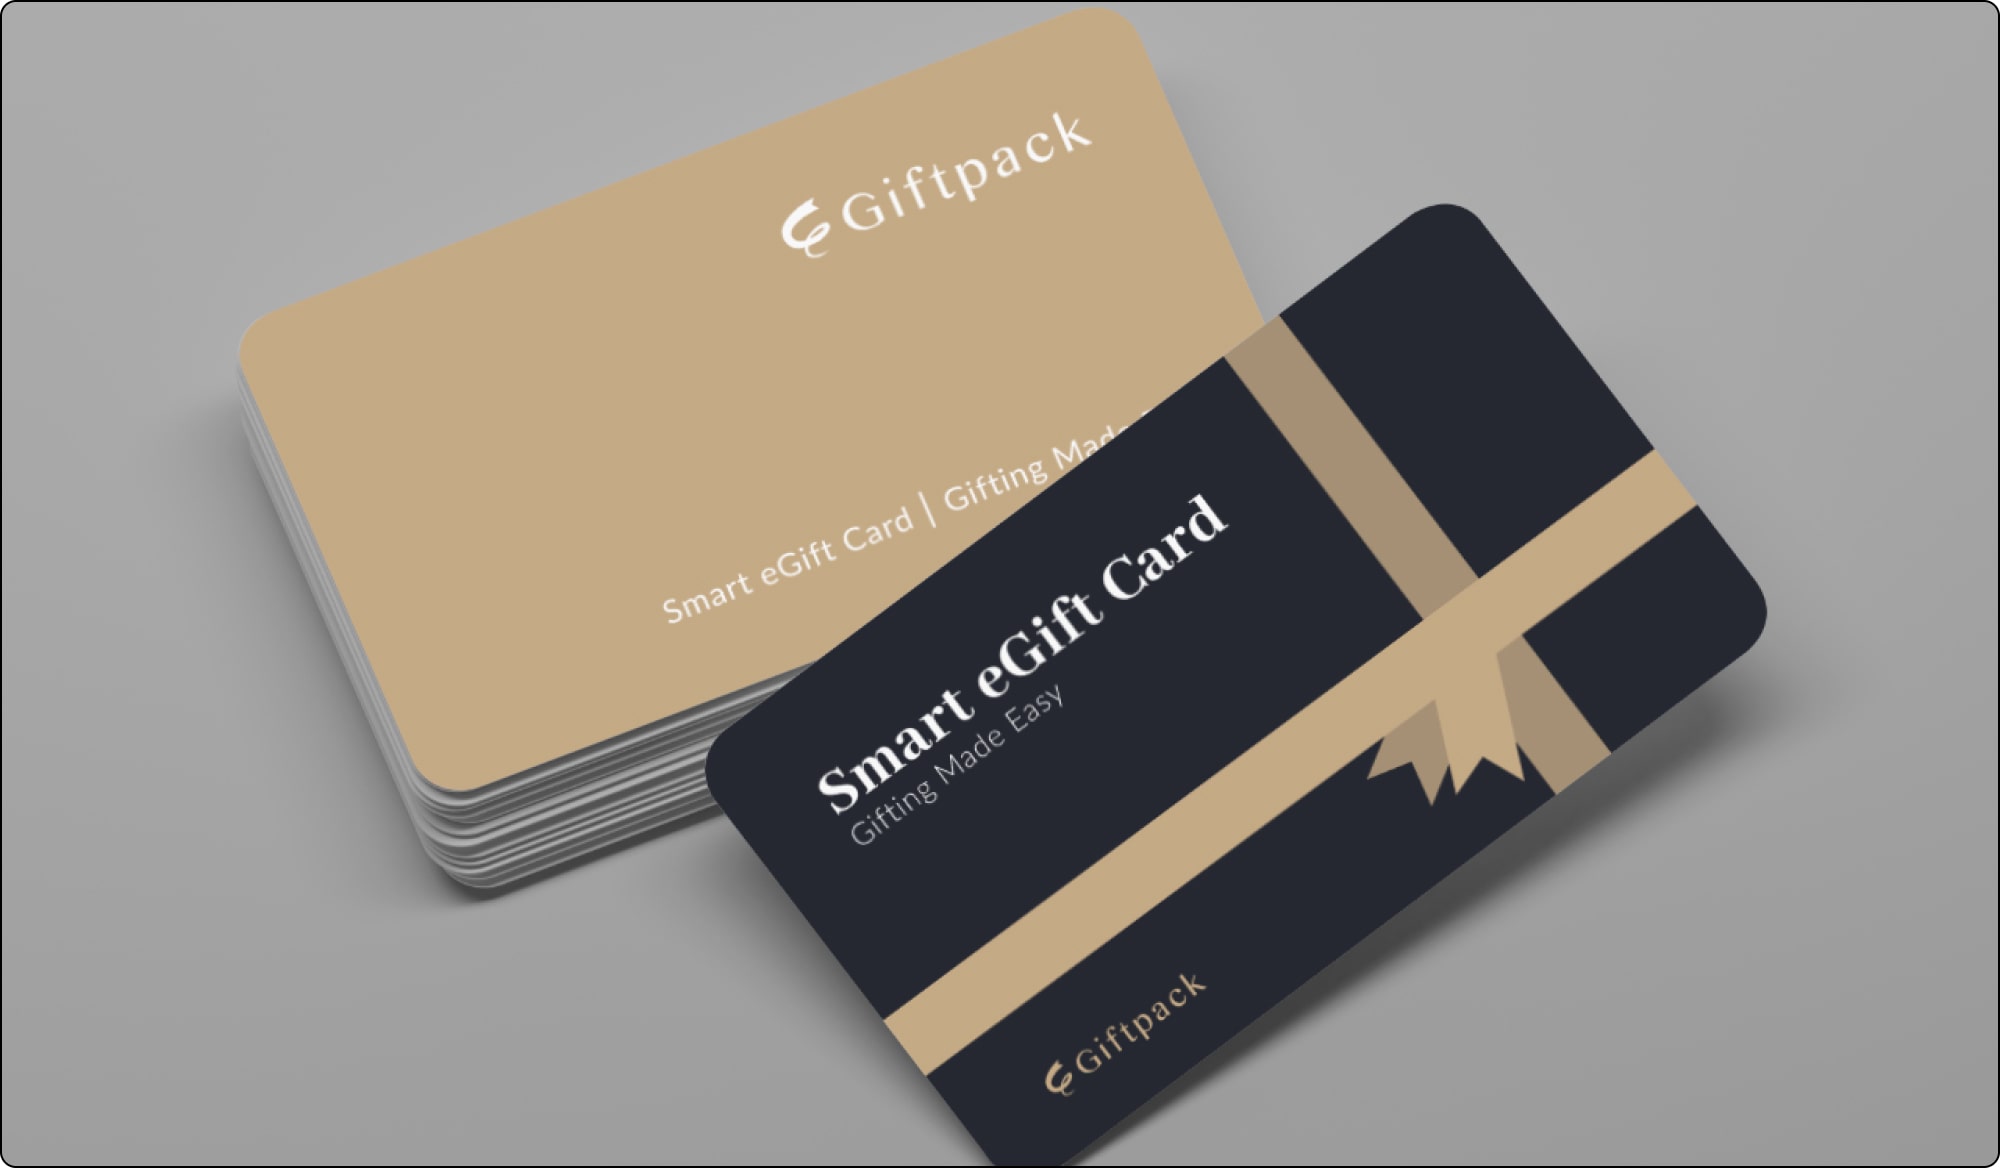 Giftpack smart egift card for 350 brands for Employee Gift Card Programs